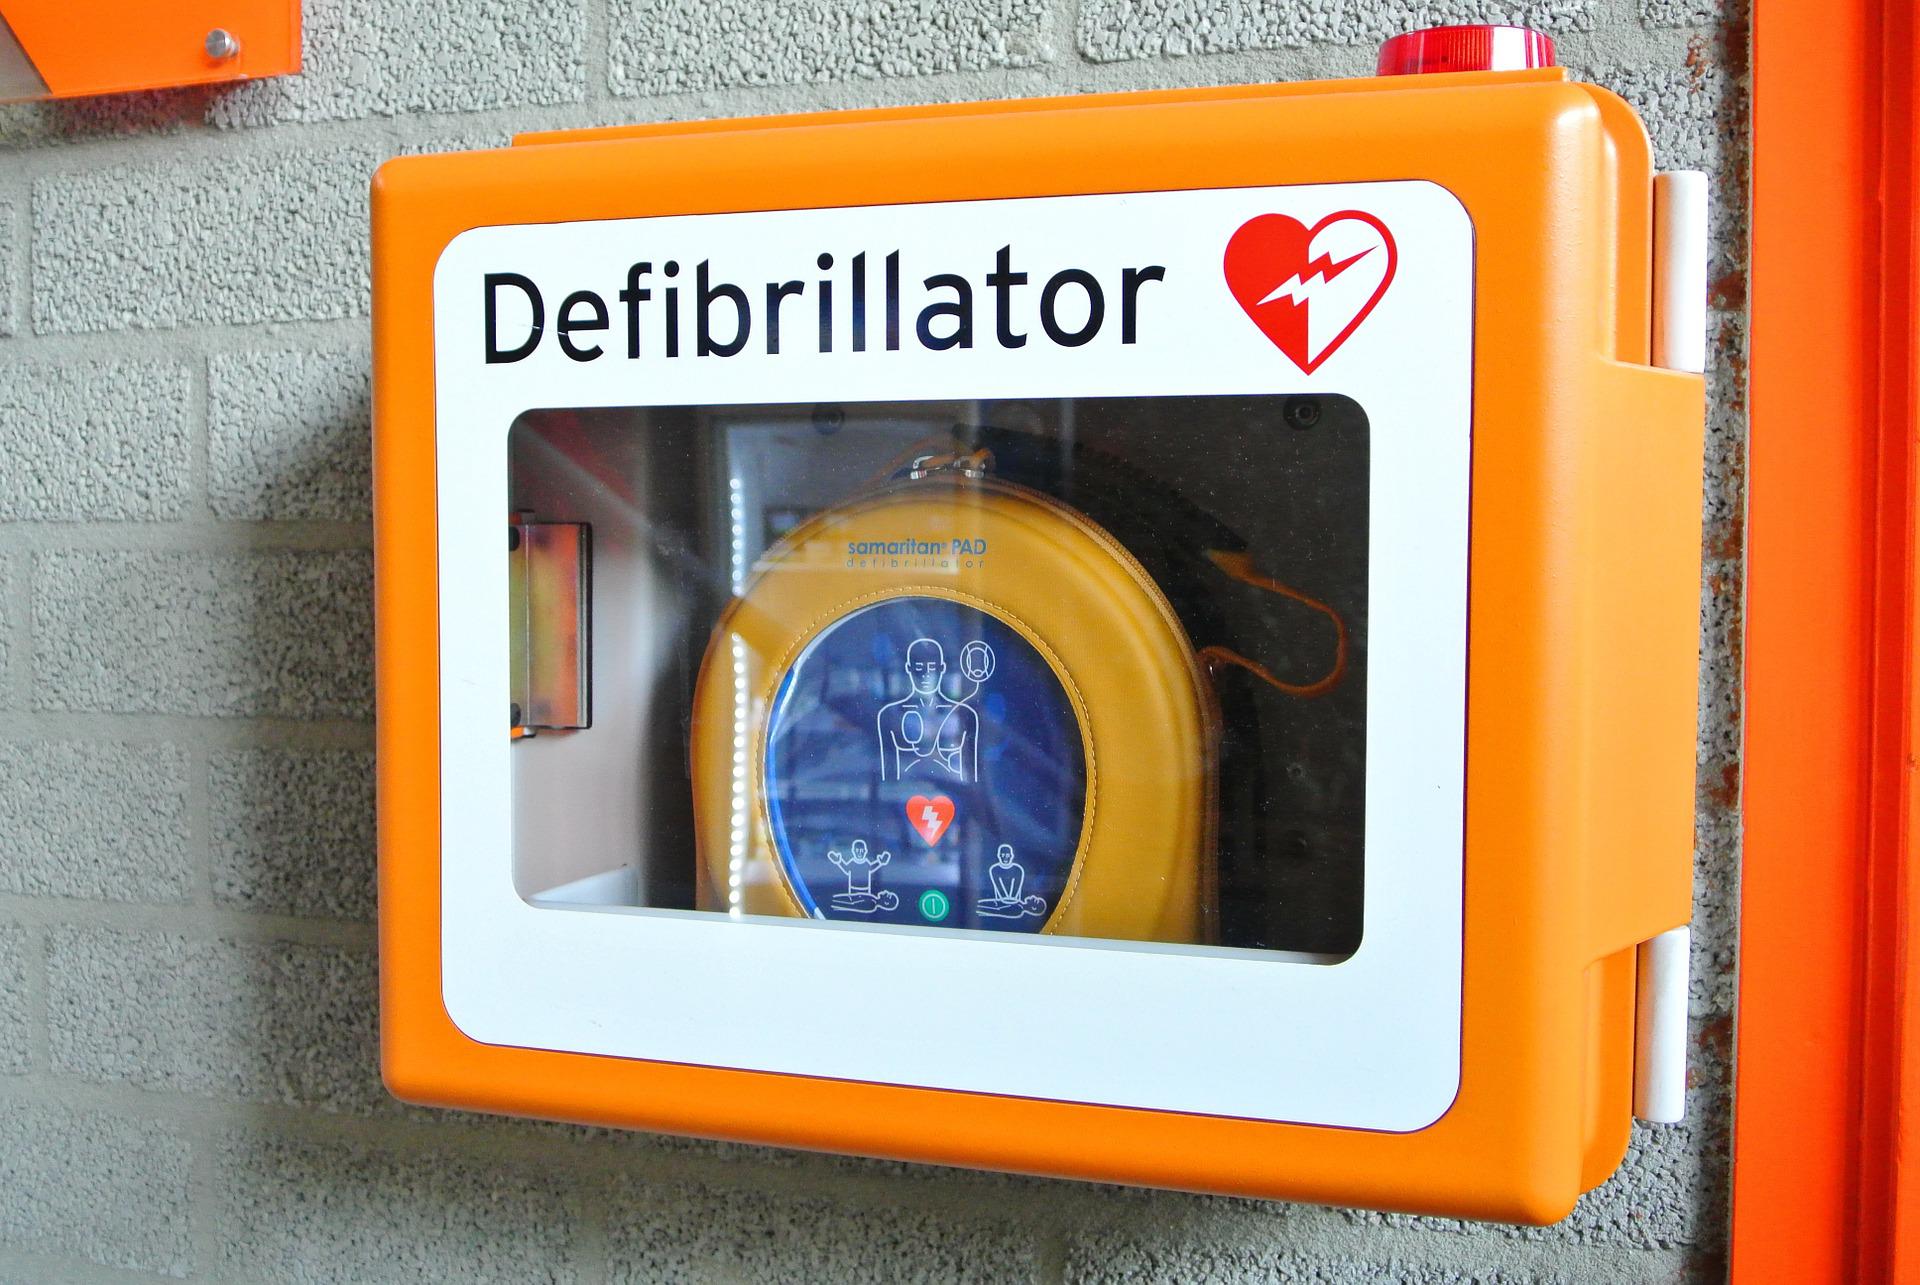 obcianske-zdruzenie-zachrana-darovalo-dubravke-defibrilator